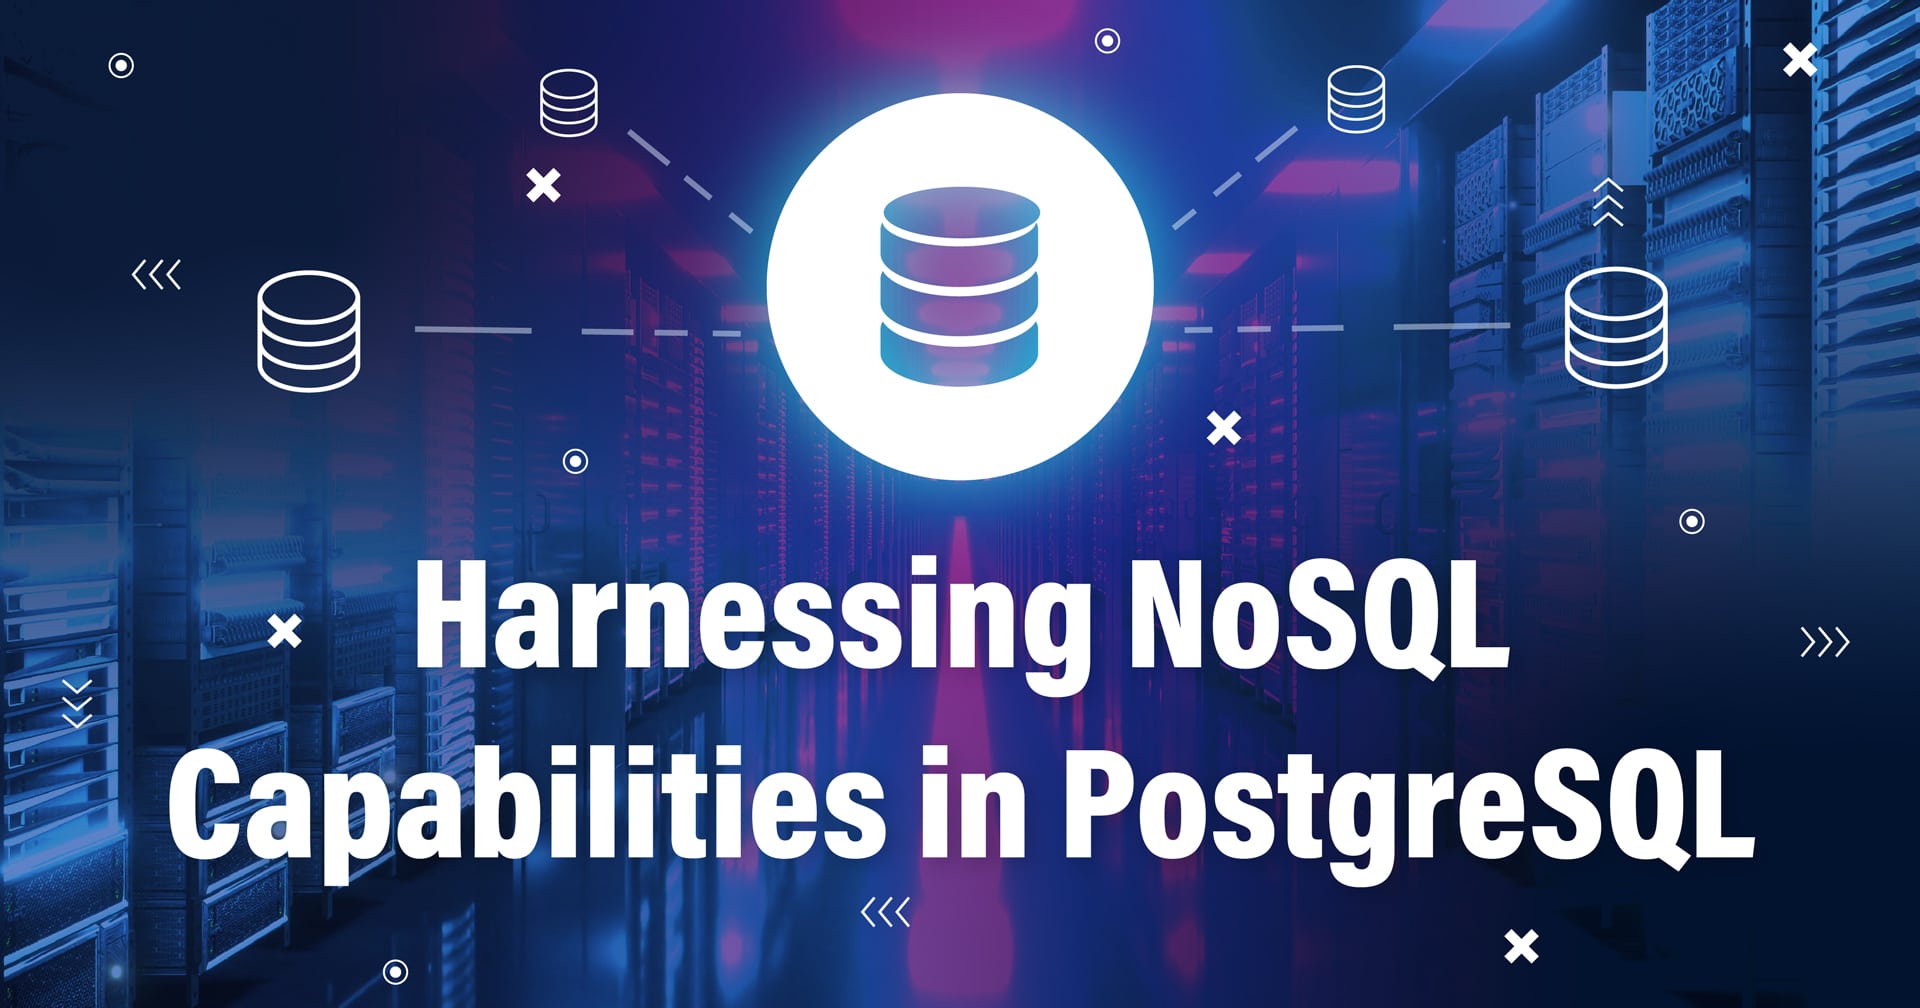 Imagen con un símbolo que representa una base de datos conectada a otras bases de datos y el texto Harnessing NoSQL Capabilities in PostgreSQL en la parte inferior.